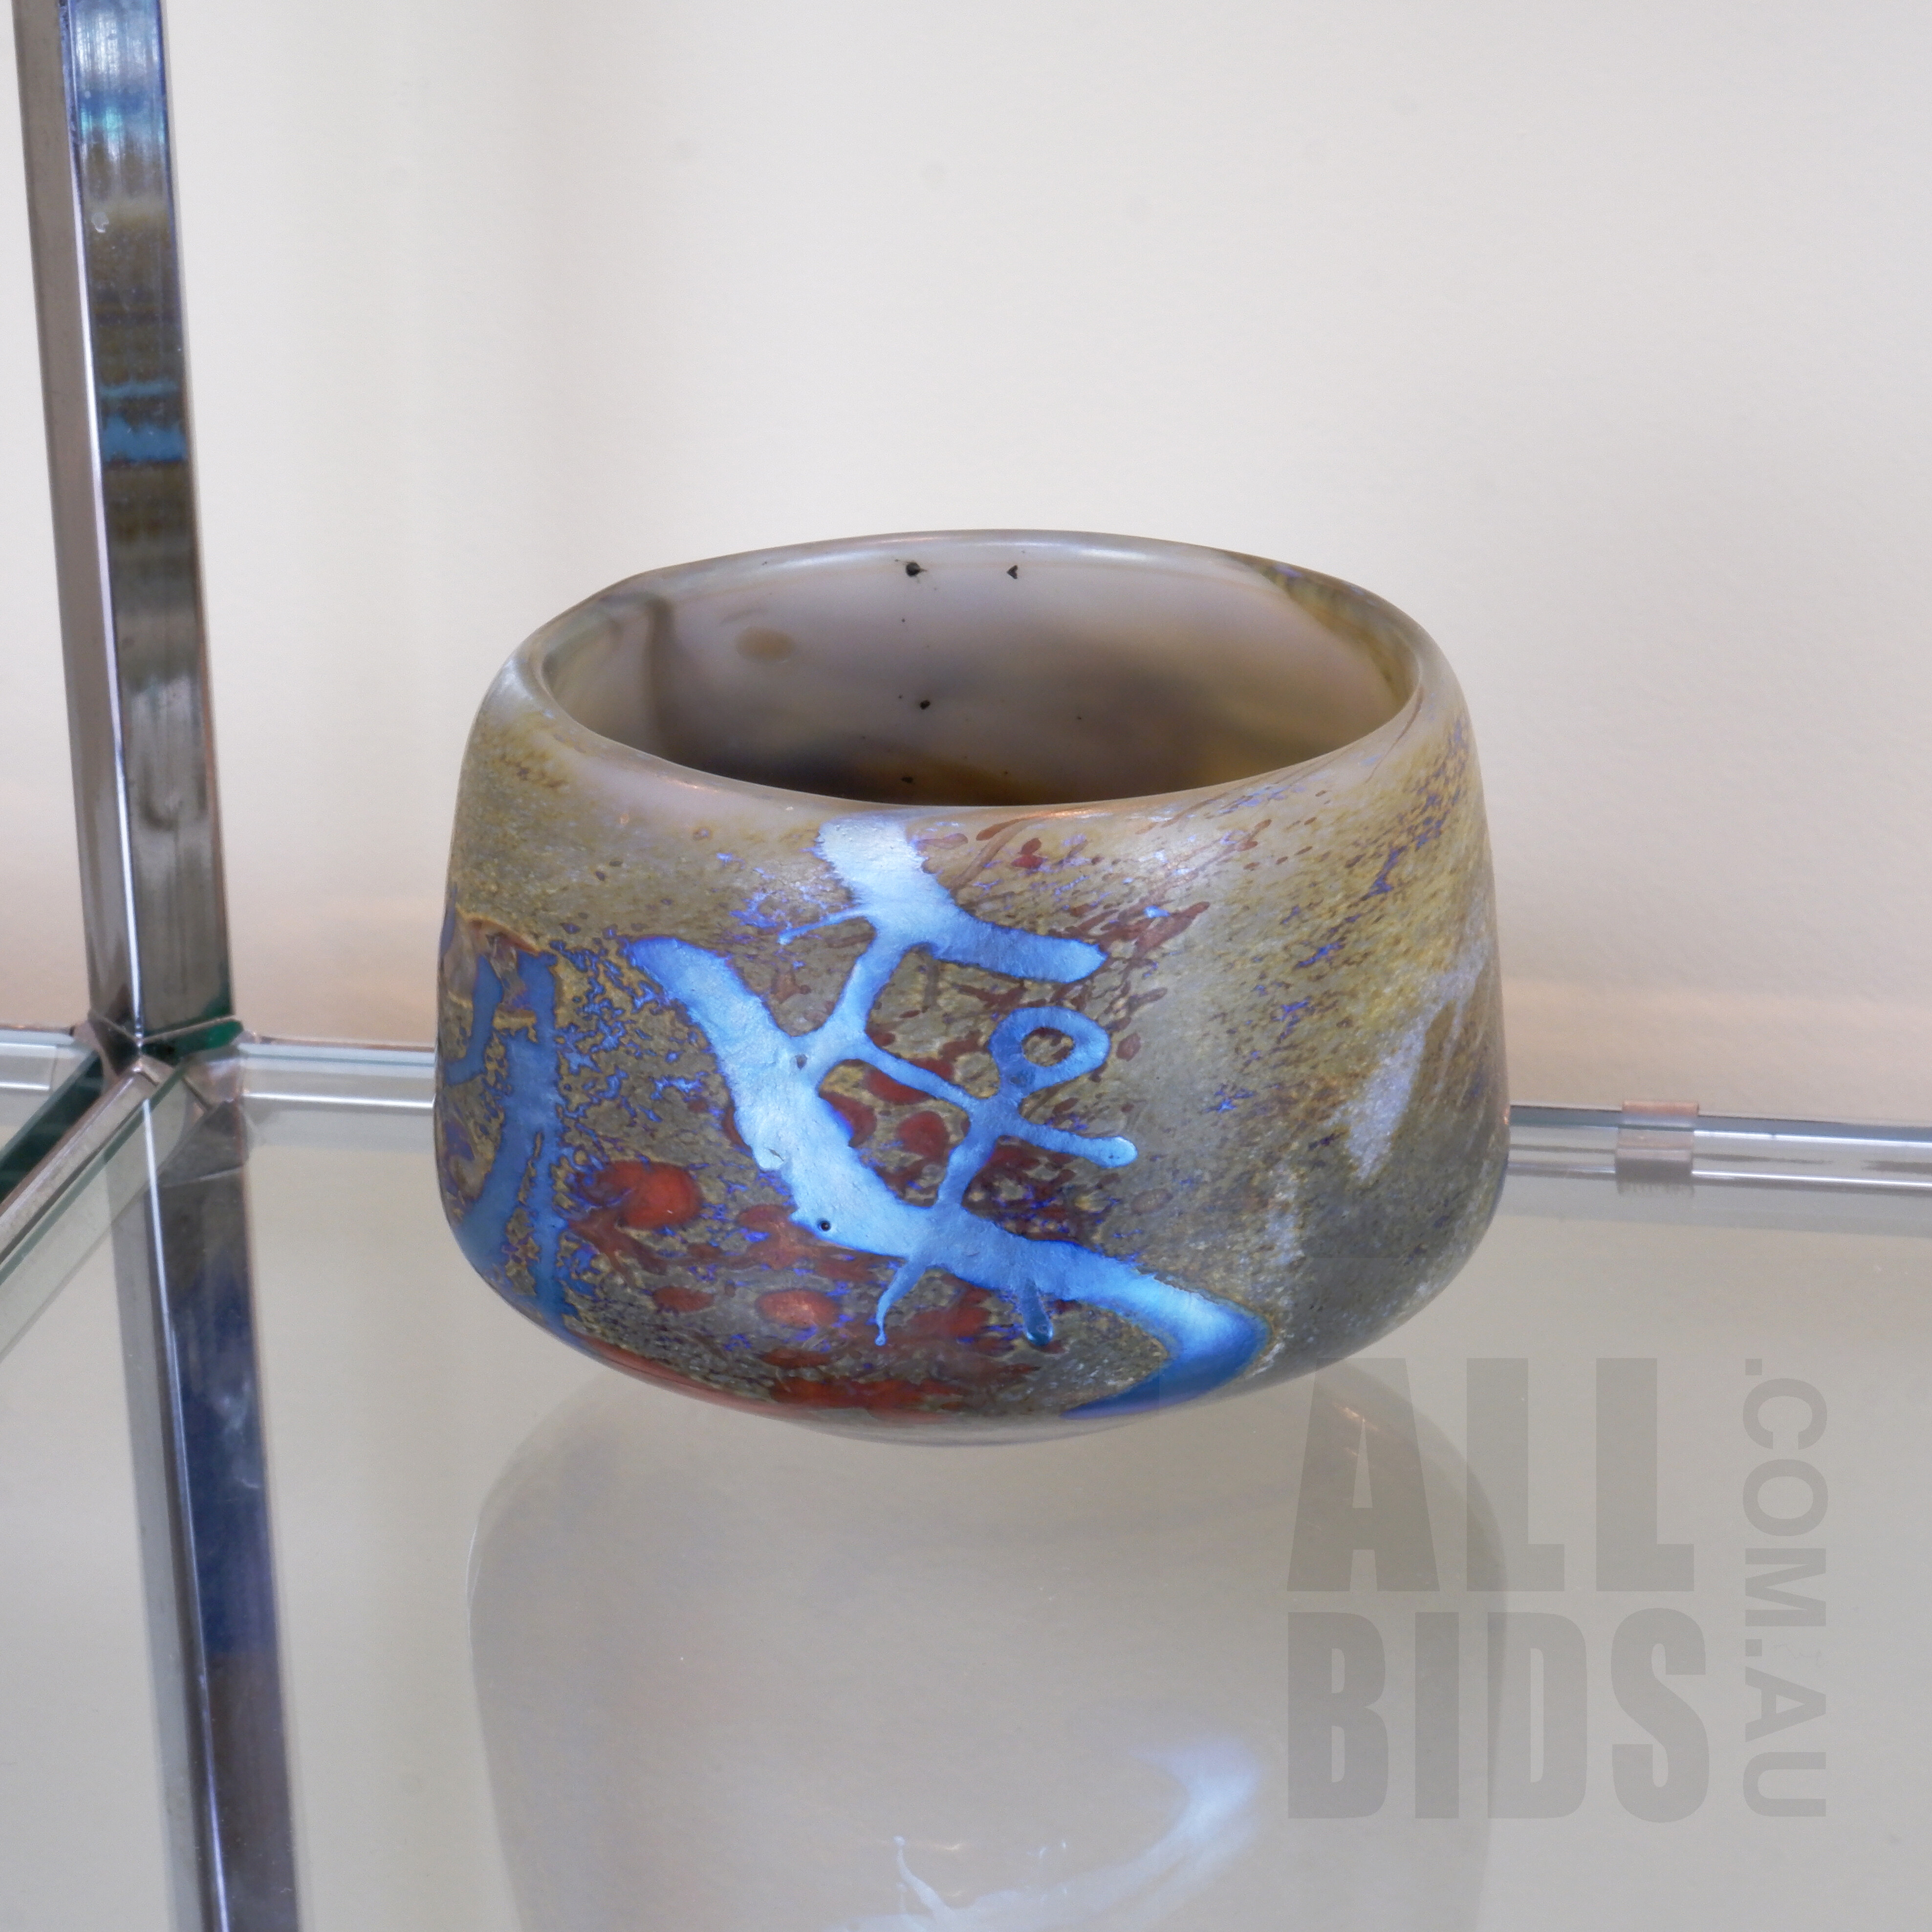 'Chris Pantano (1948-) Iridescent Art Glass Bowl'